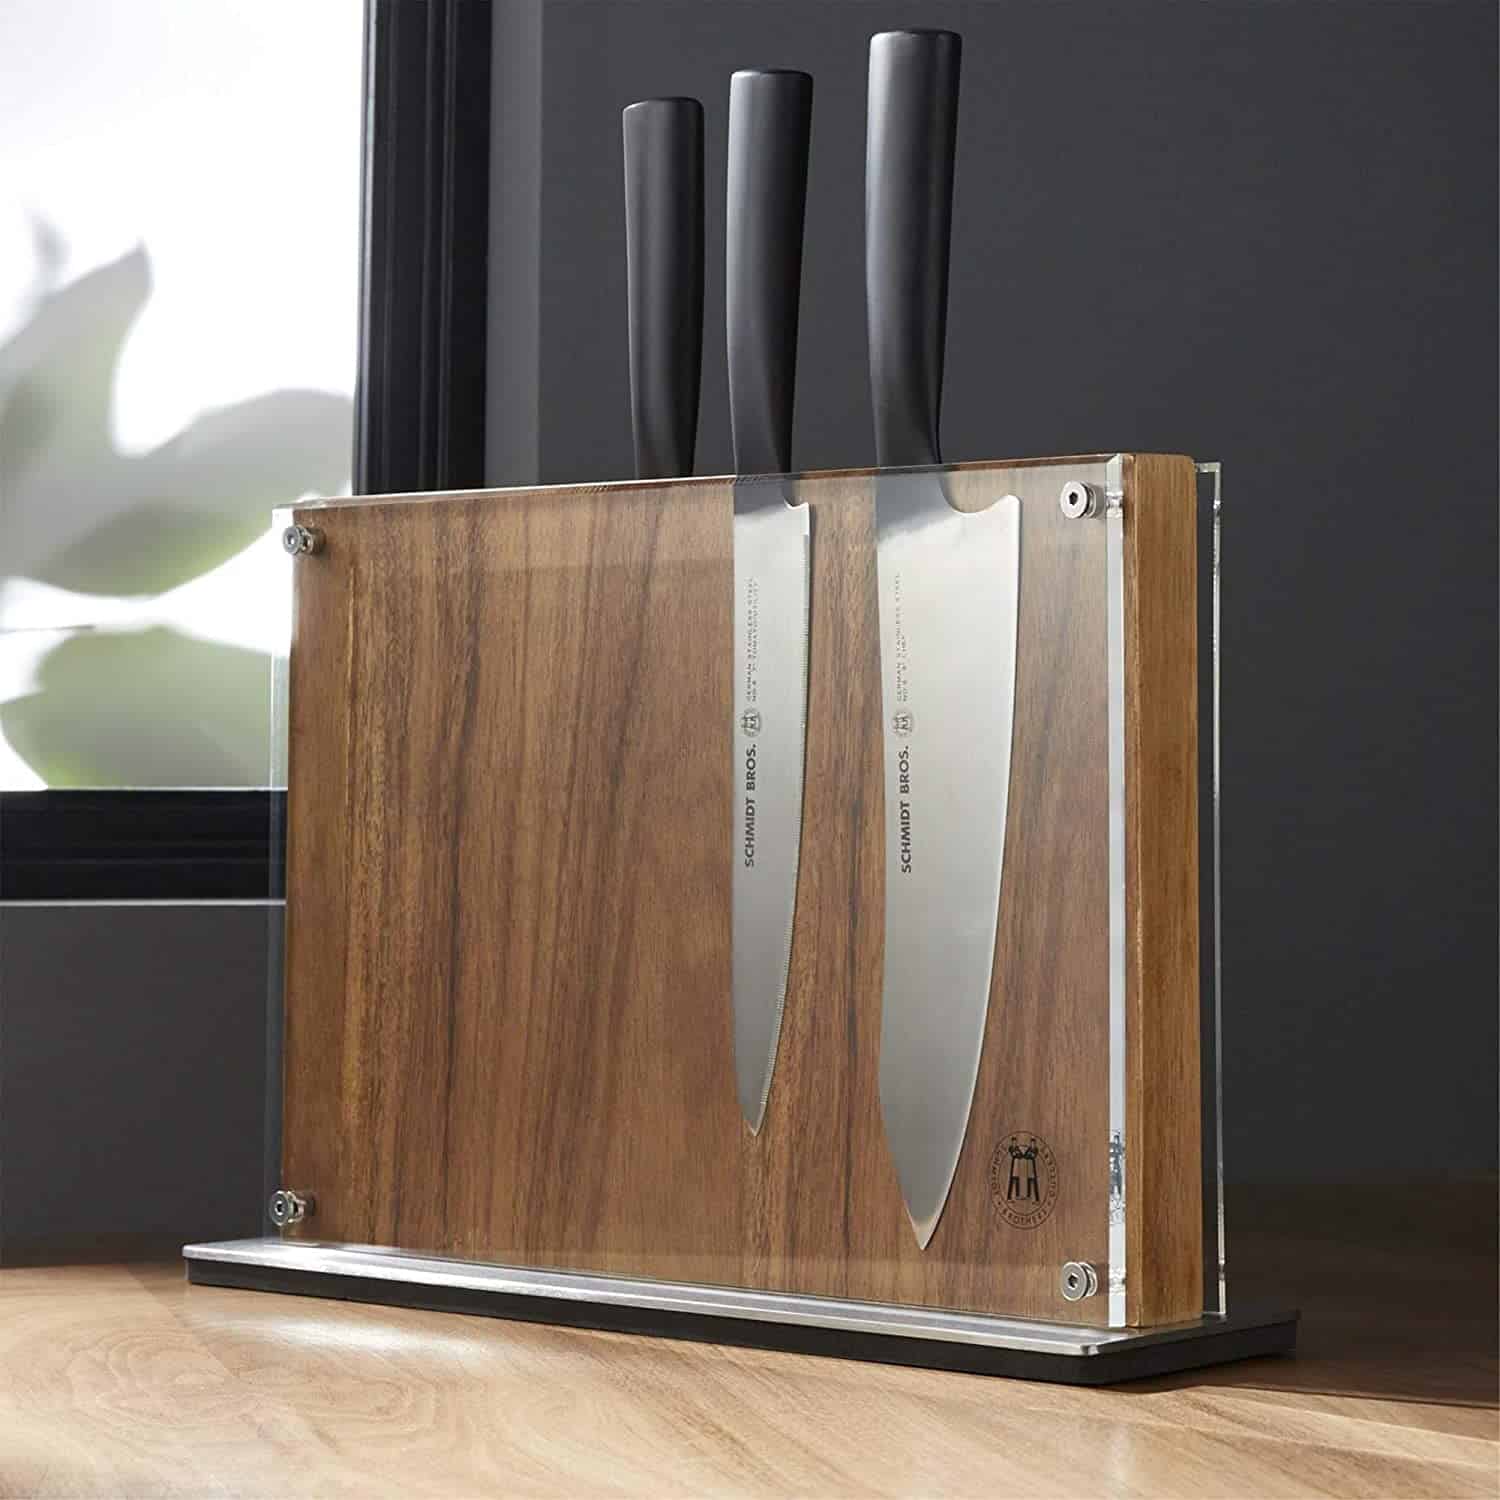 El mejor bloque magnético para cuchillos: Schmidt Brothers Acacia Downtown en la cocina